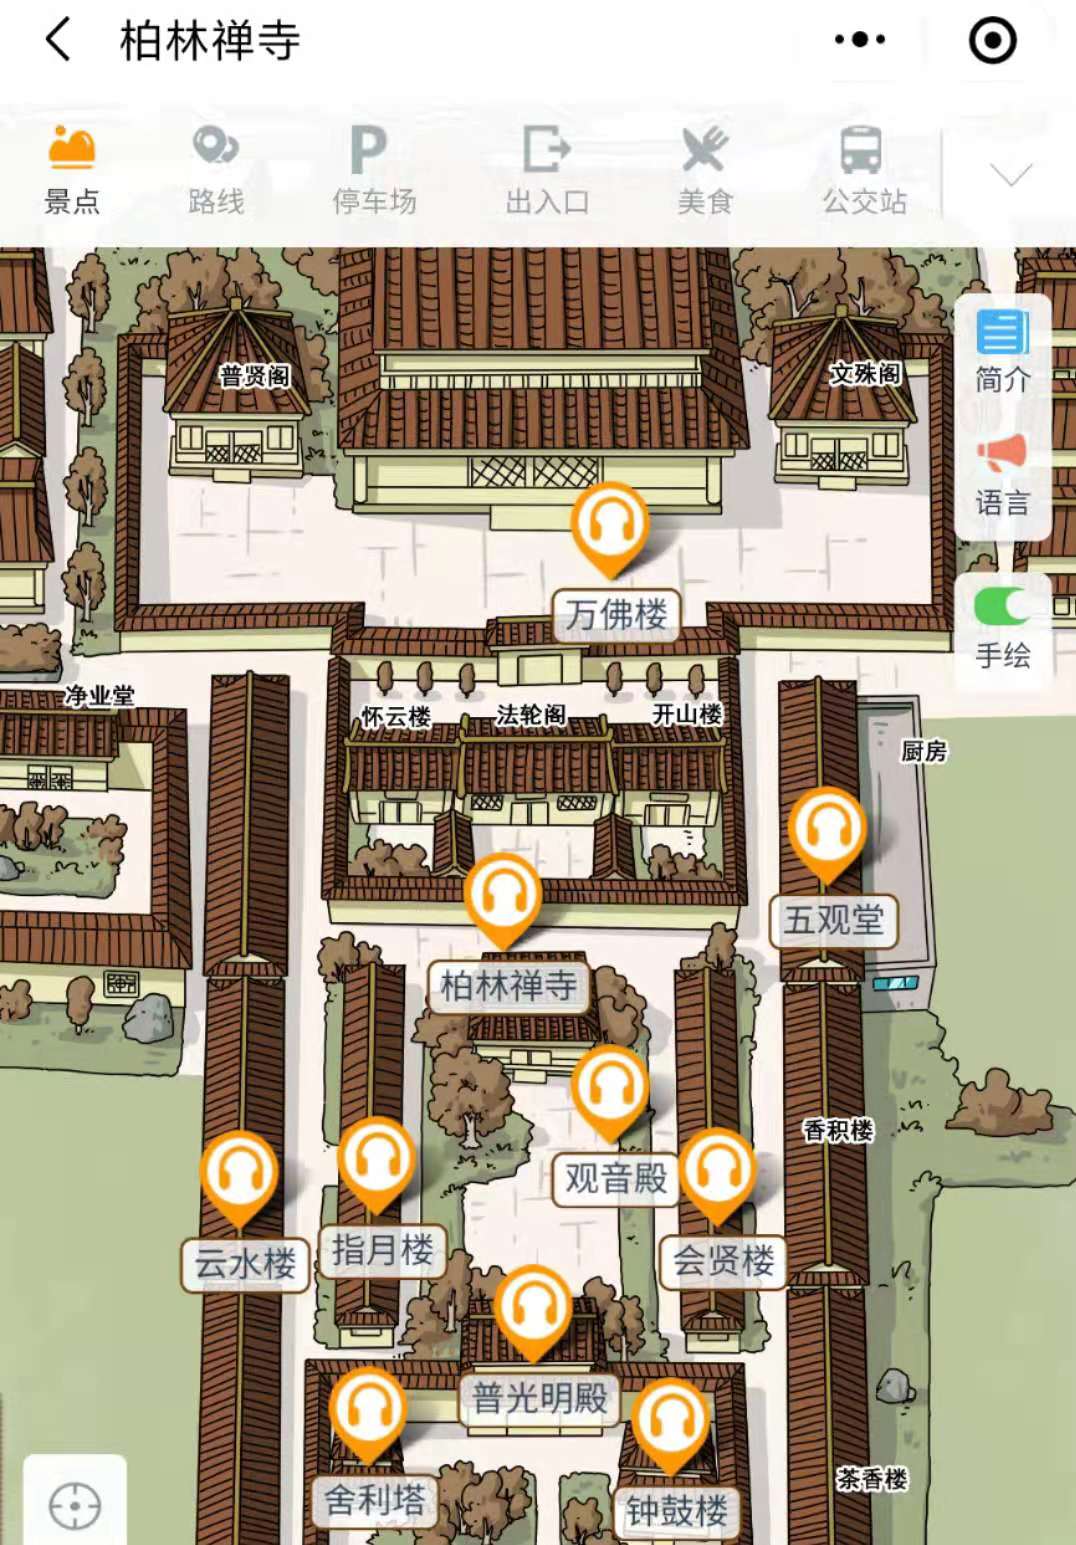 2021年河北柏林禅寺景区智能导览系统都有哪些新功能.jpg